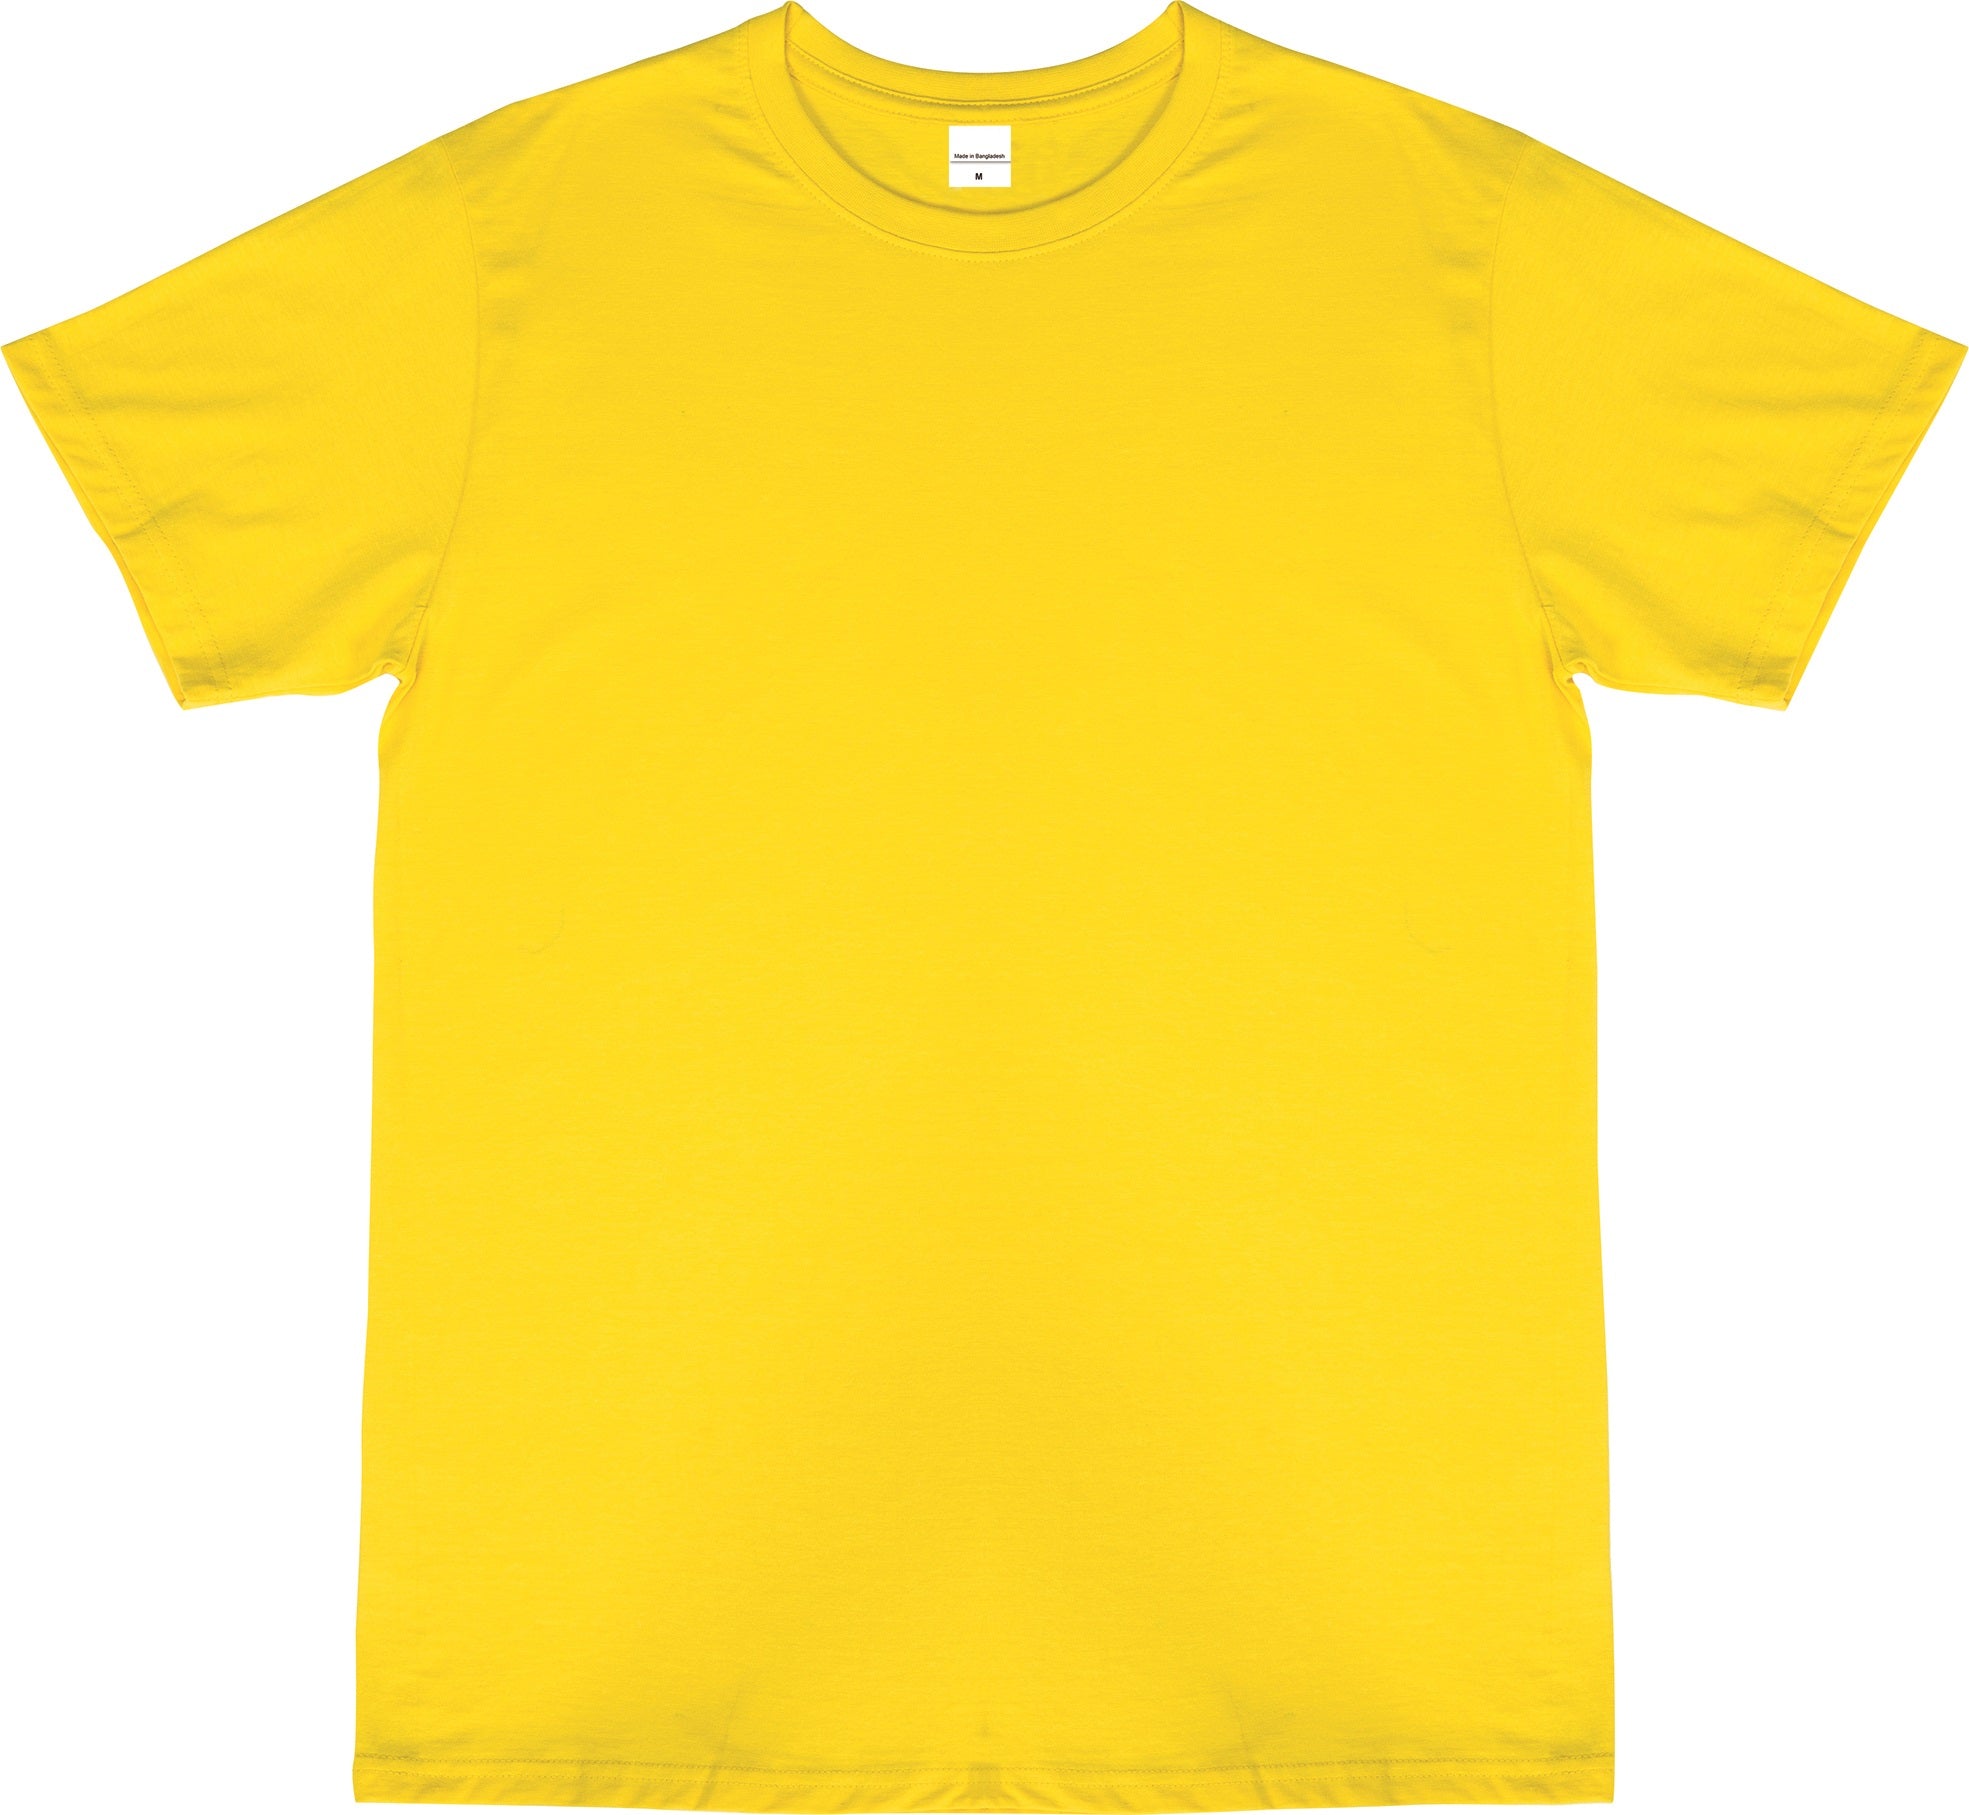 SOGNA Man's T-Shirt 100% Ring Spun Cotton Basic Tee & Unisex